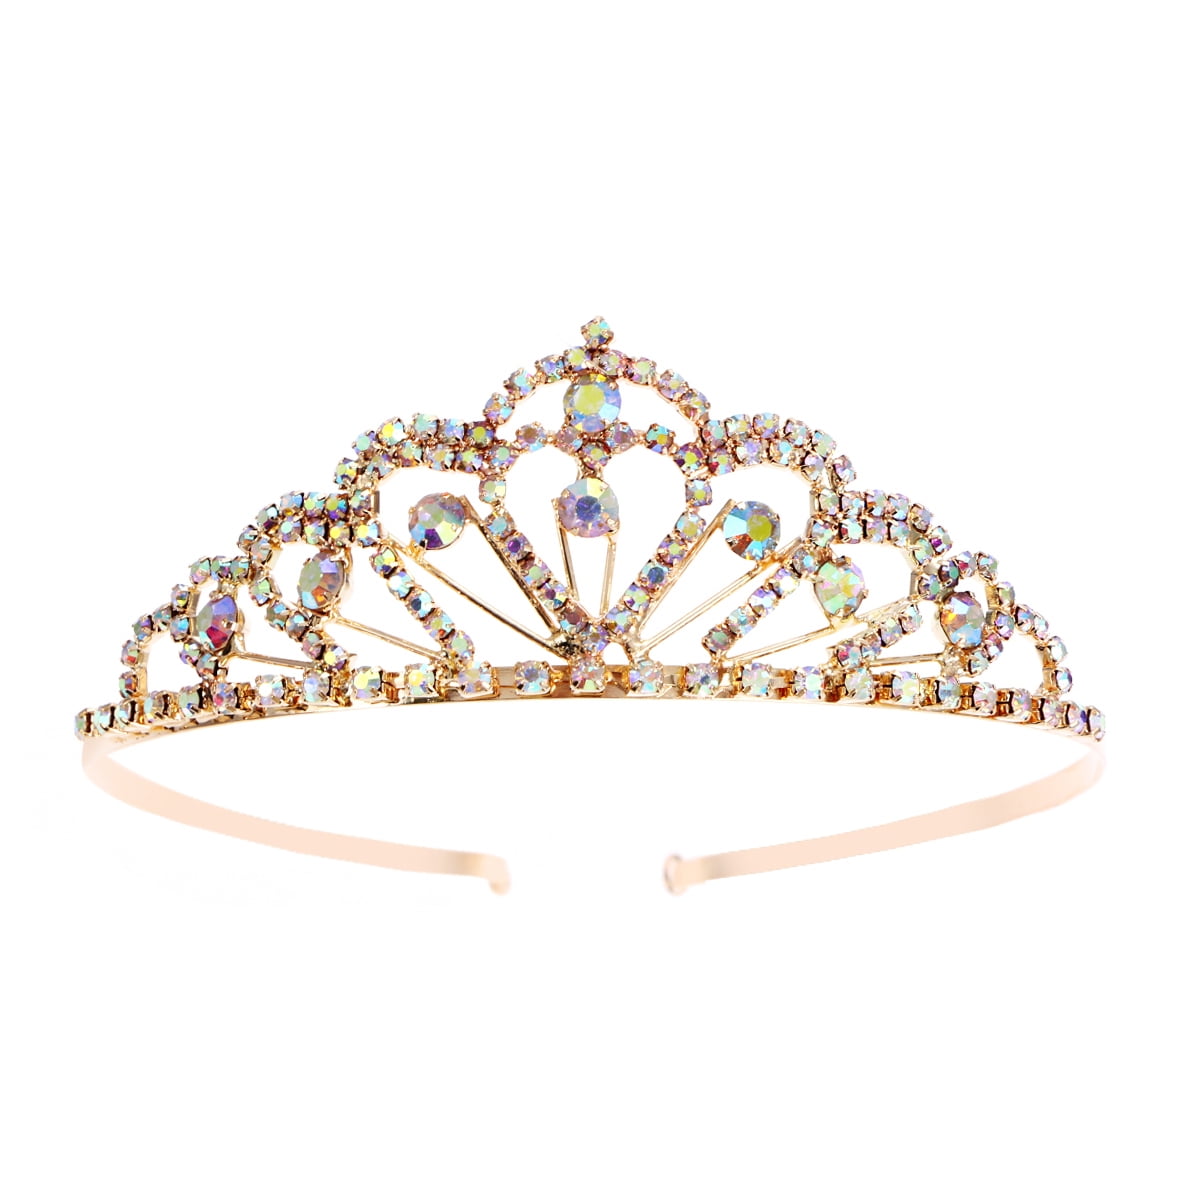 Sparkly Crystals Rhinestones Bridal Tiara Crown With Comb Bride Hair Accessories 